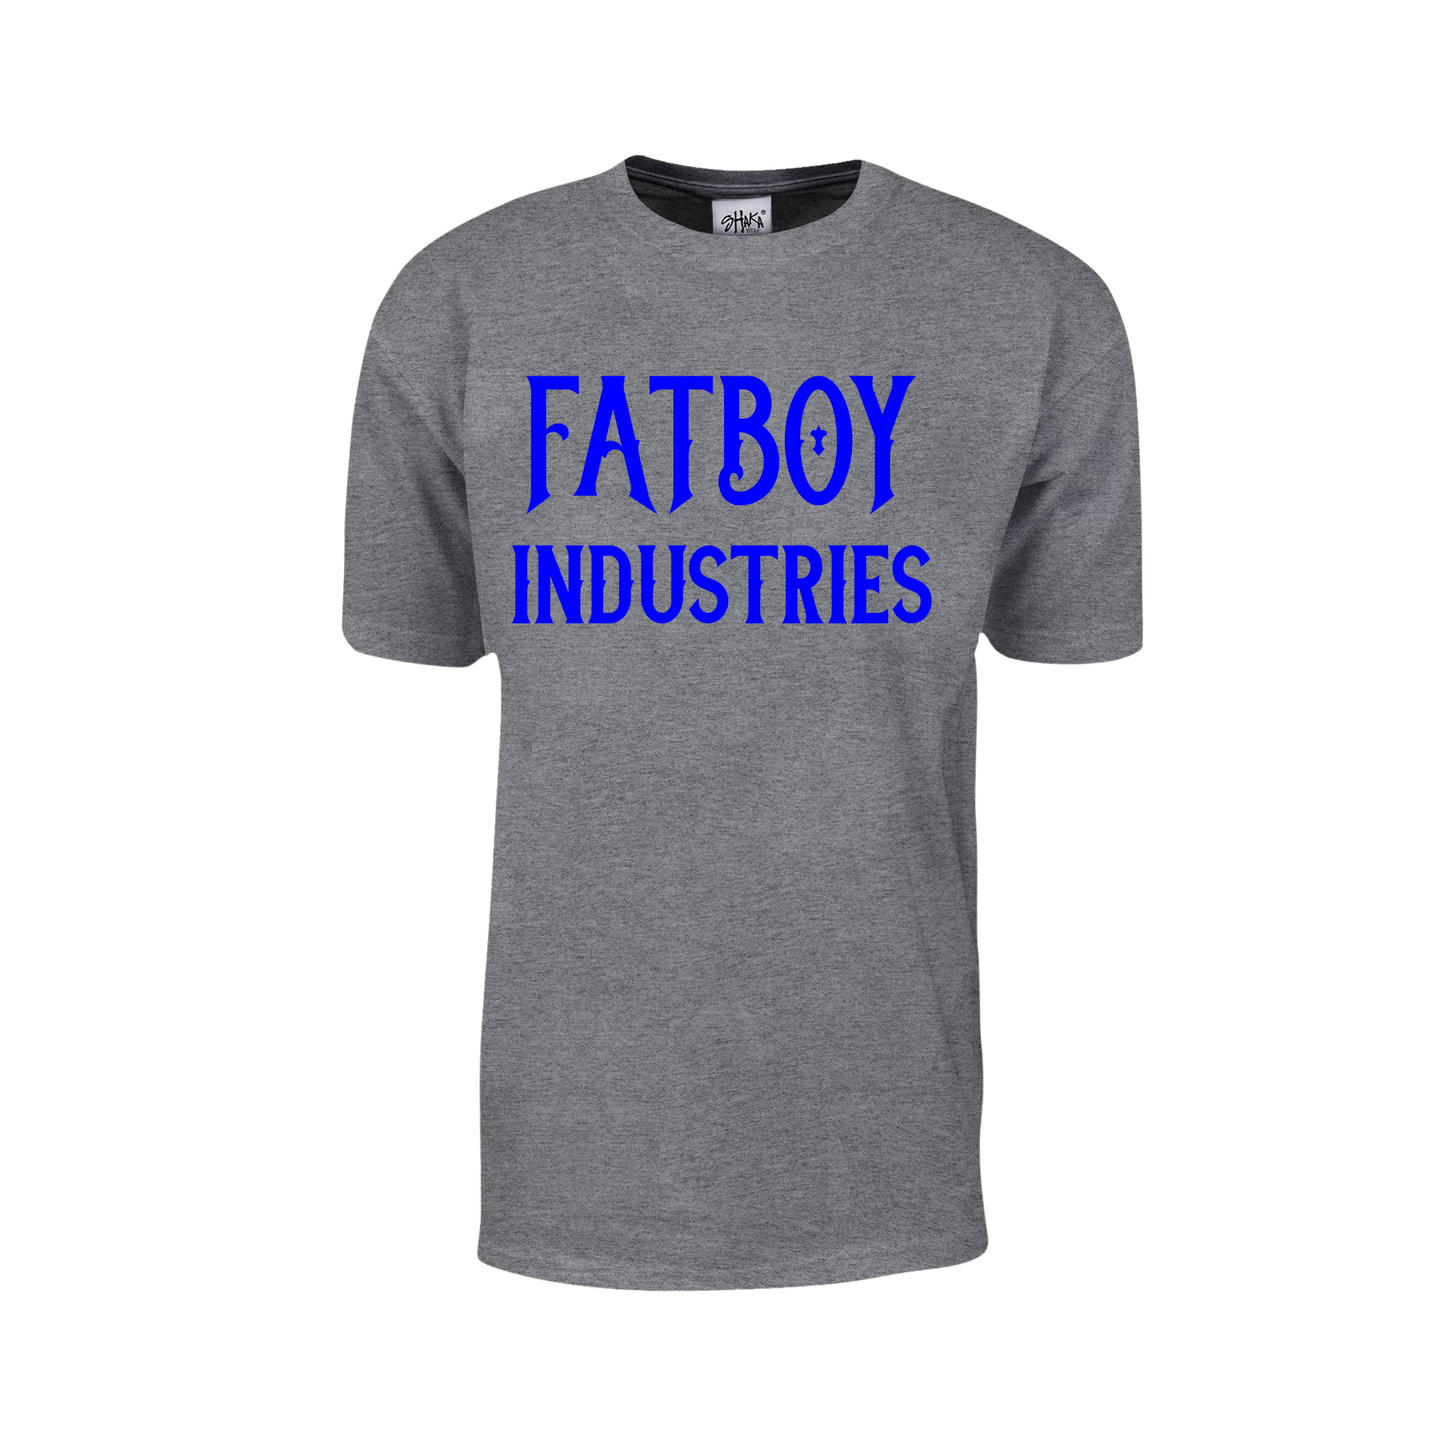 Fatboy Industries - Royal Blue